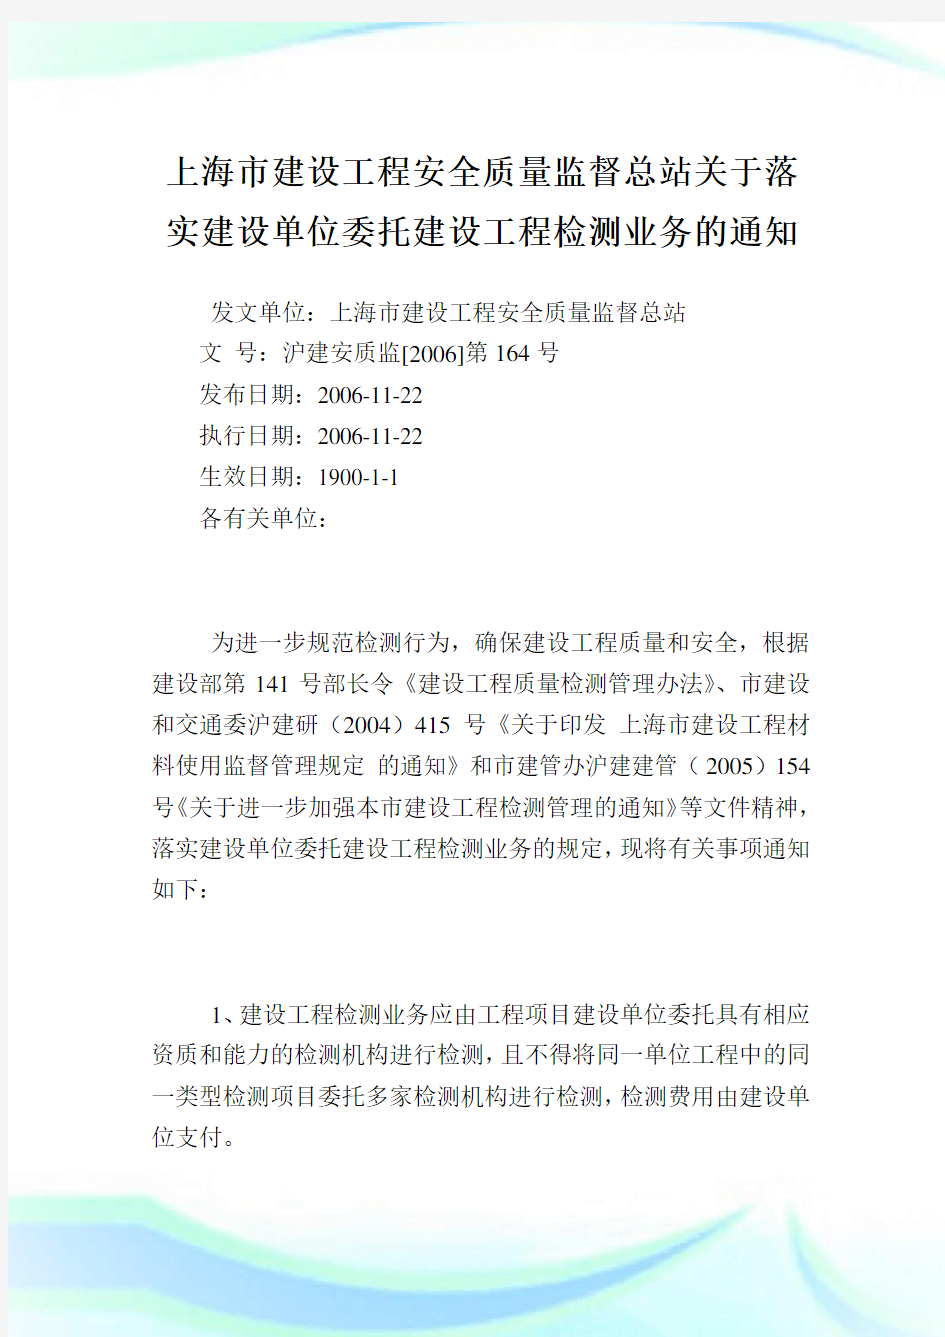 上海市建设工程安全质量监督总站落实建设单位委托建设工程检测业务.doc